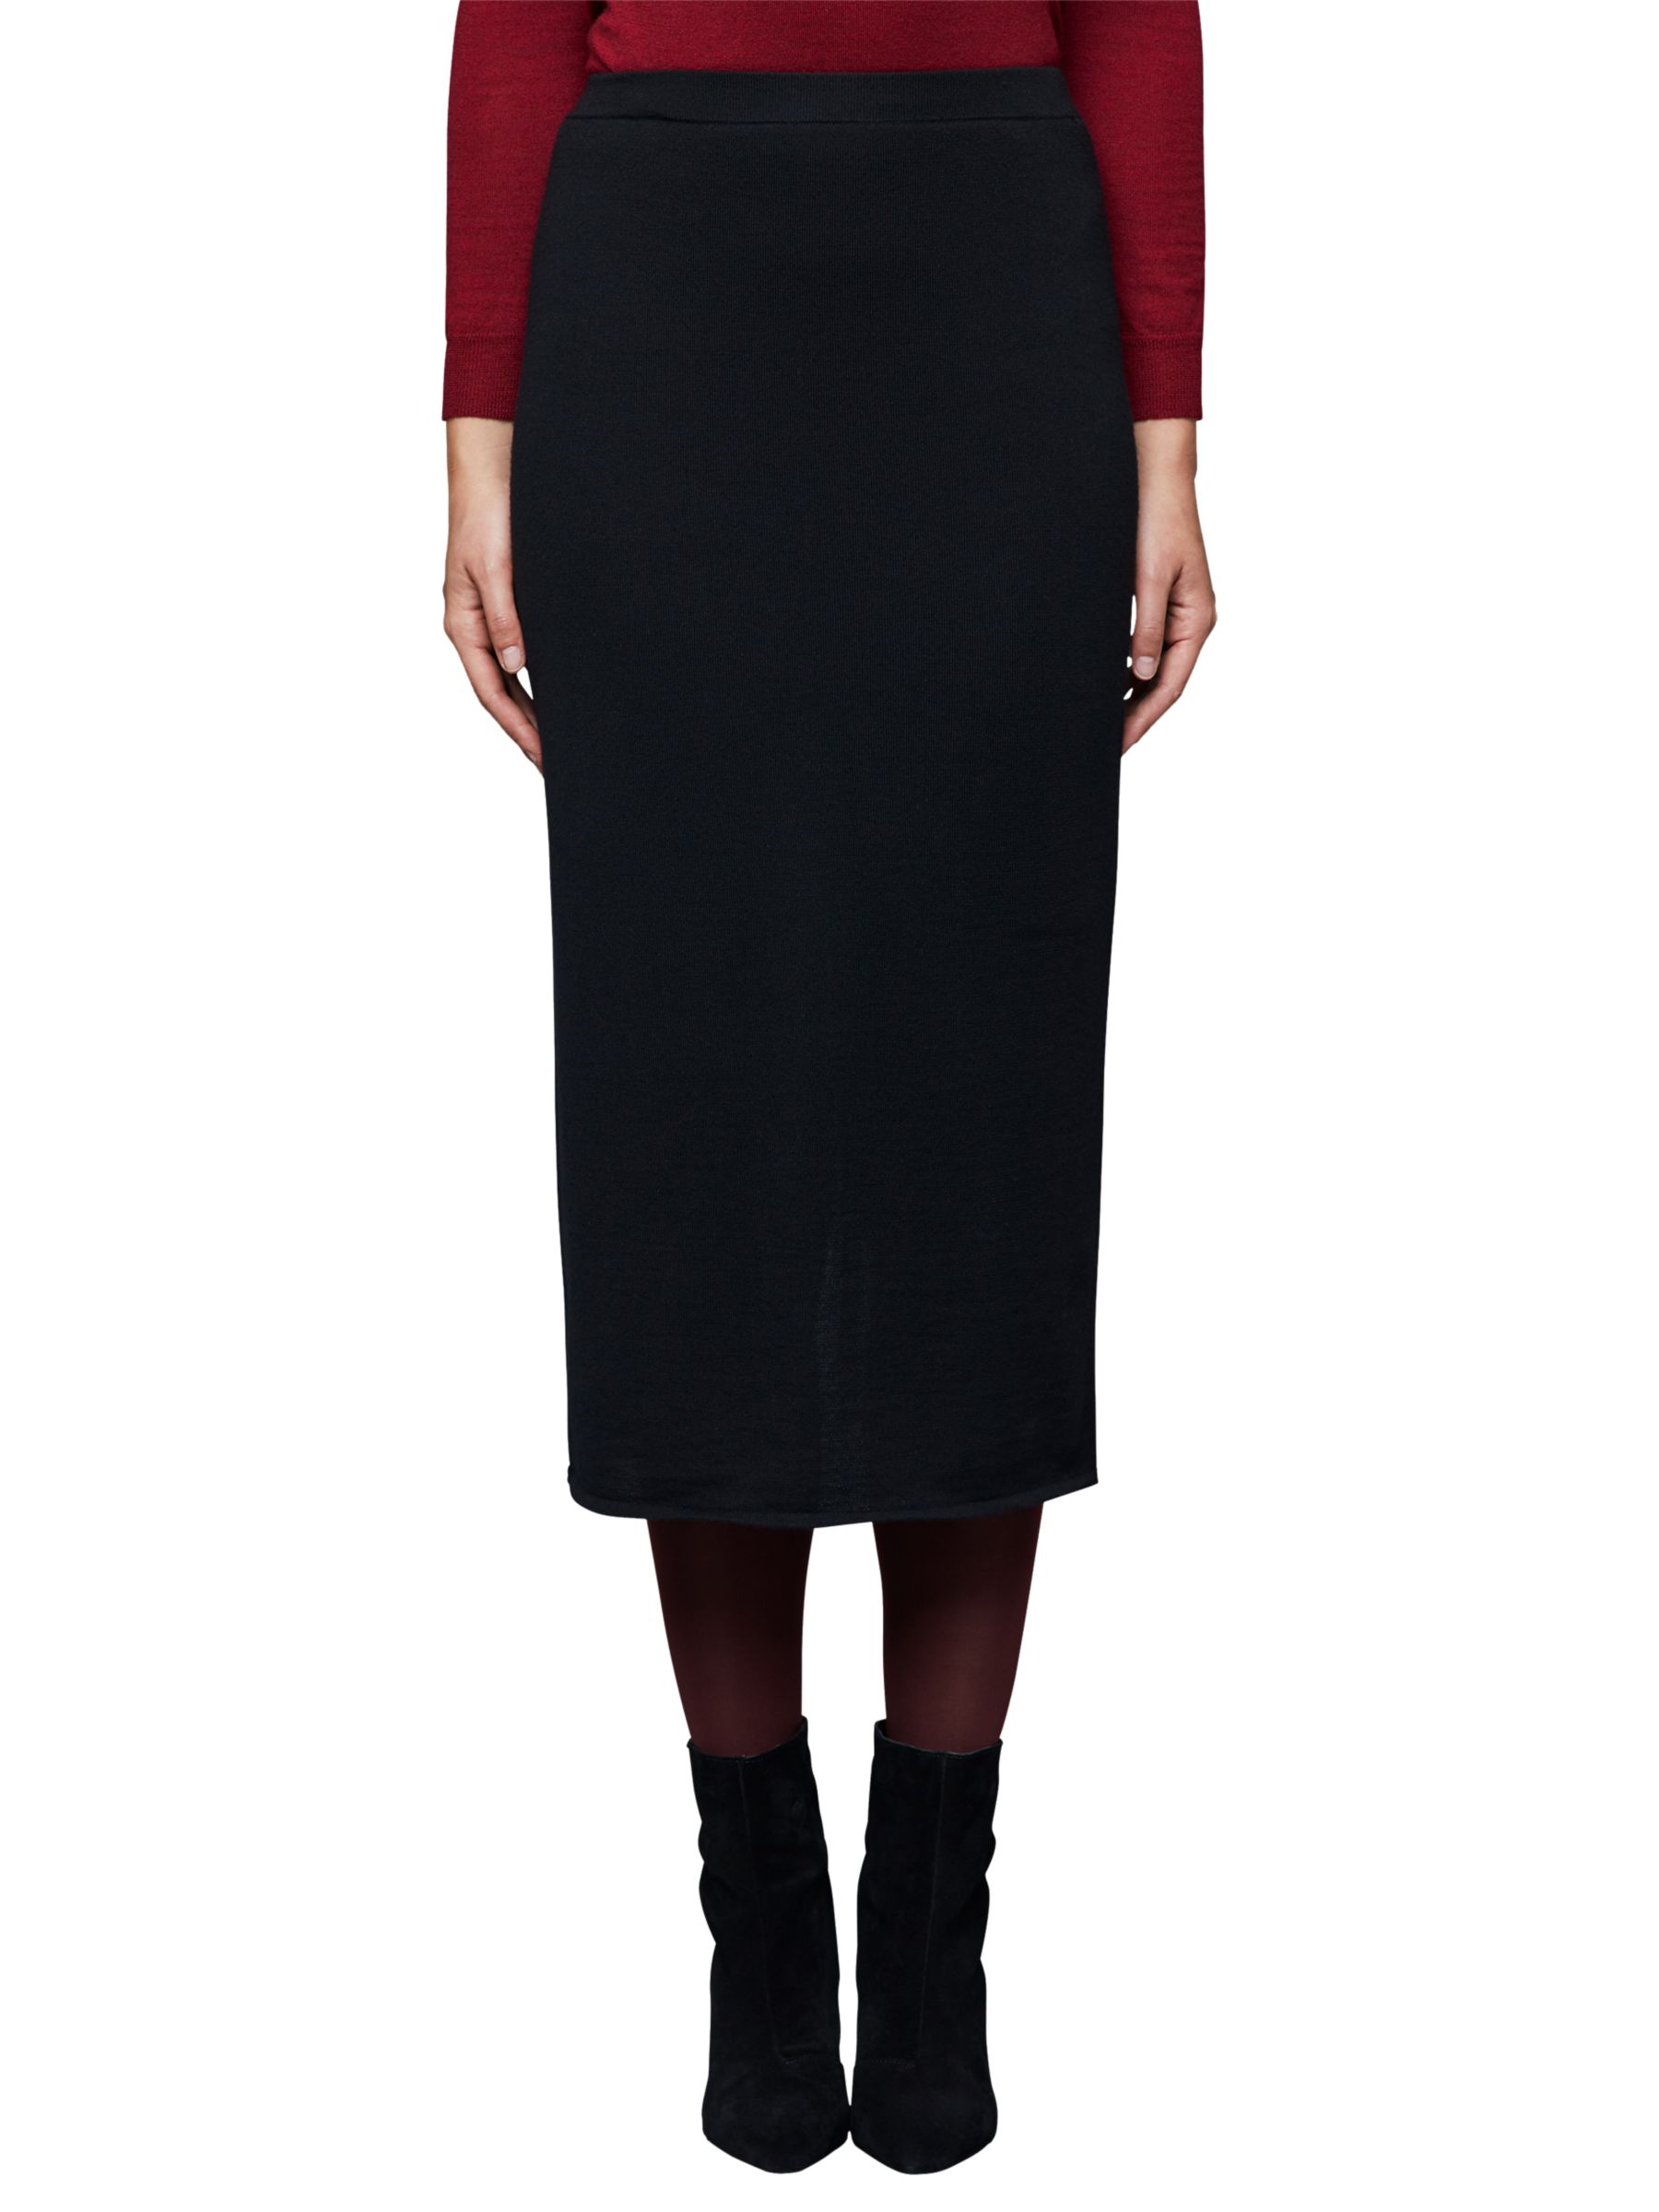 East Merino Wool Midi Pencil Skirt, Black